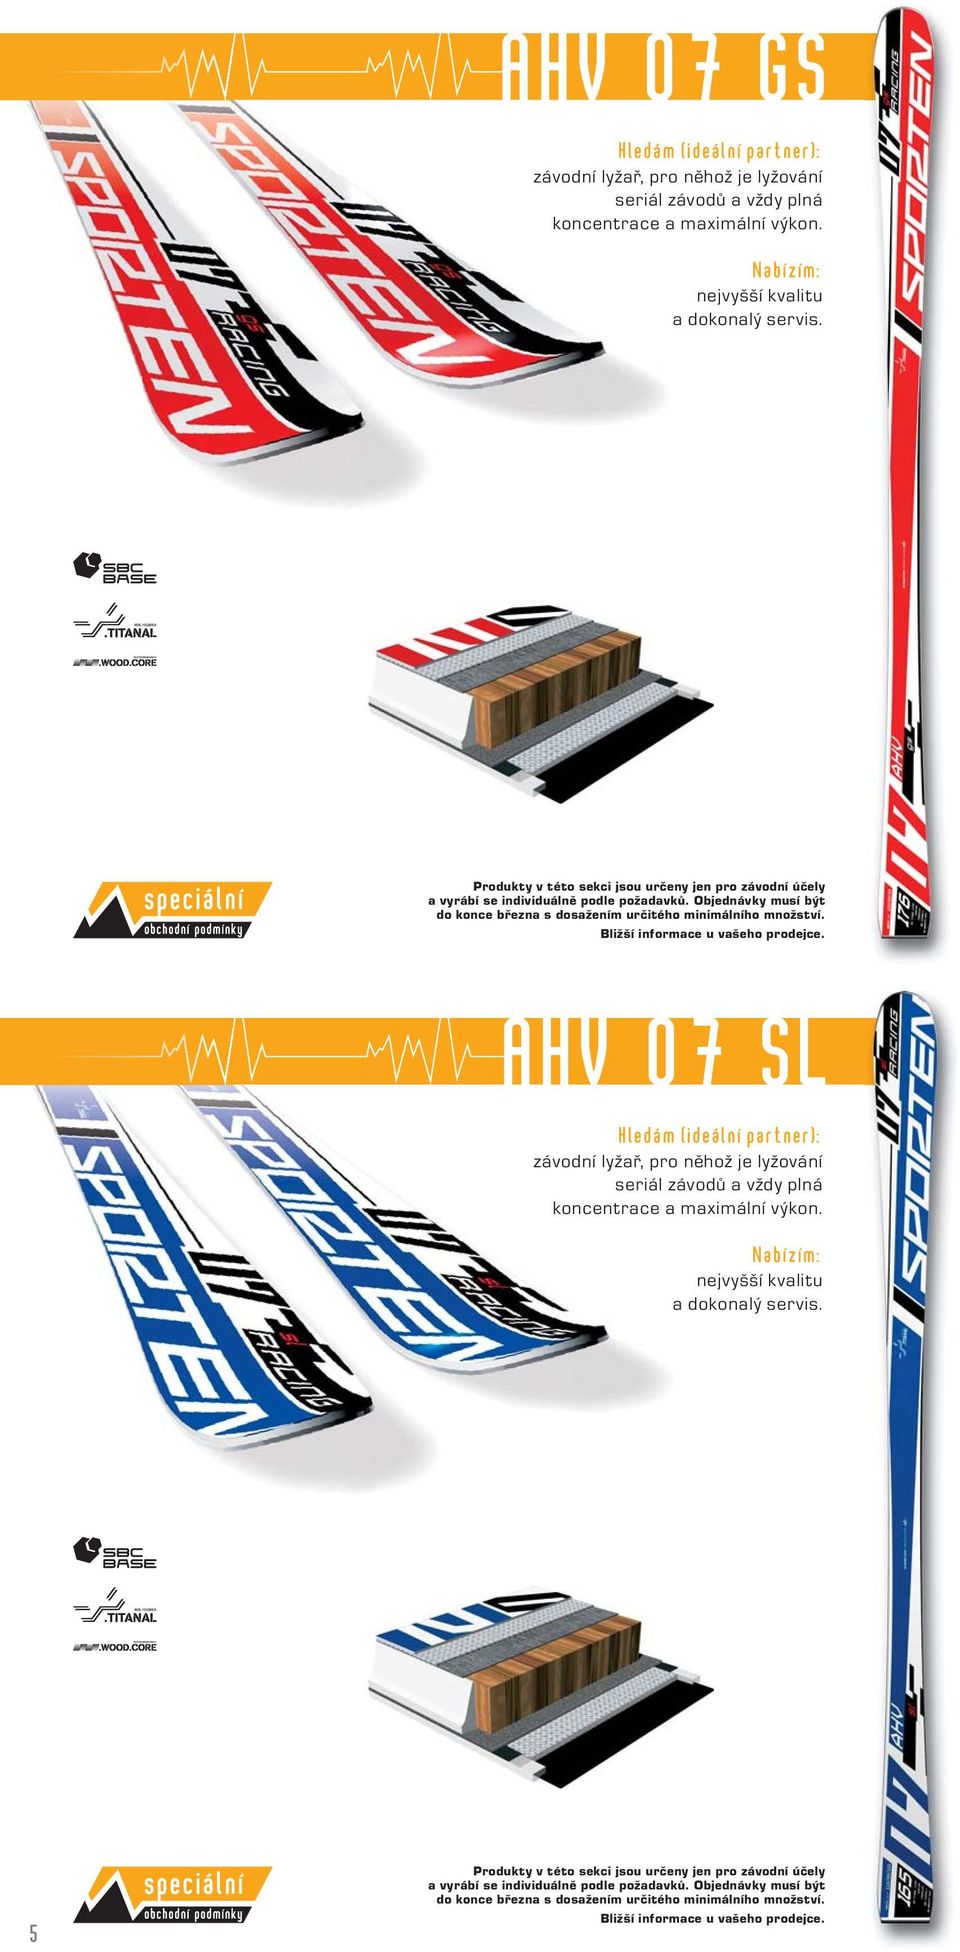 Bližší informace u vašeho prodejce. AHV 07 SL závodní lyžař, pro něhož je lyžování seriál závodů a vždy plná koncentrace a maximální výkon. nejvyšší kvalitu a dokonalý servis.